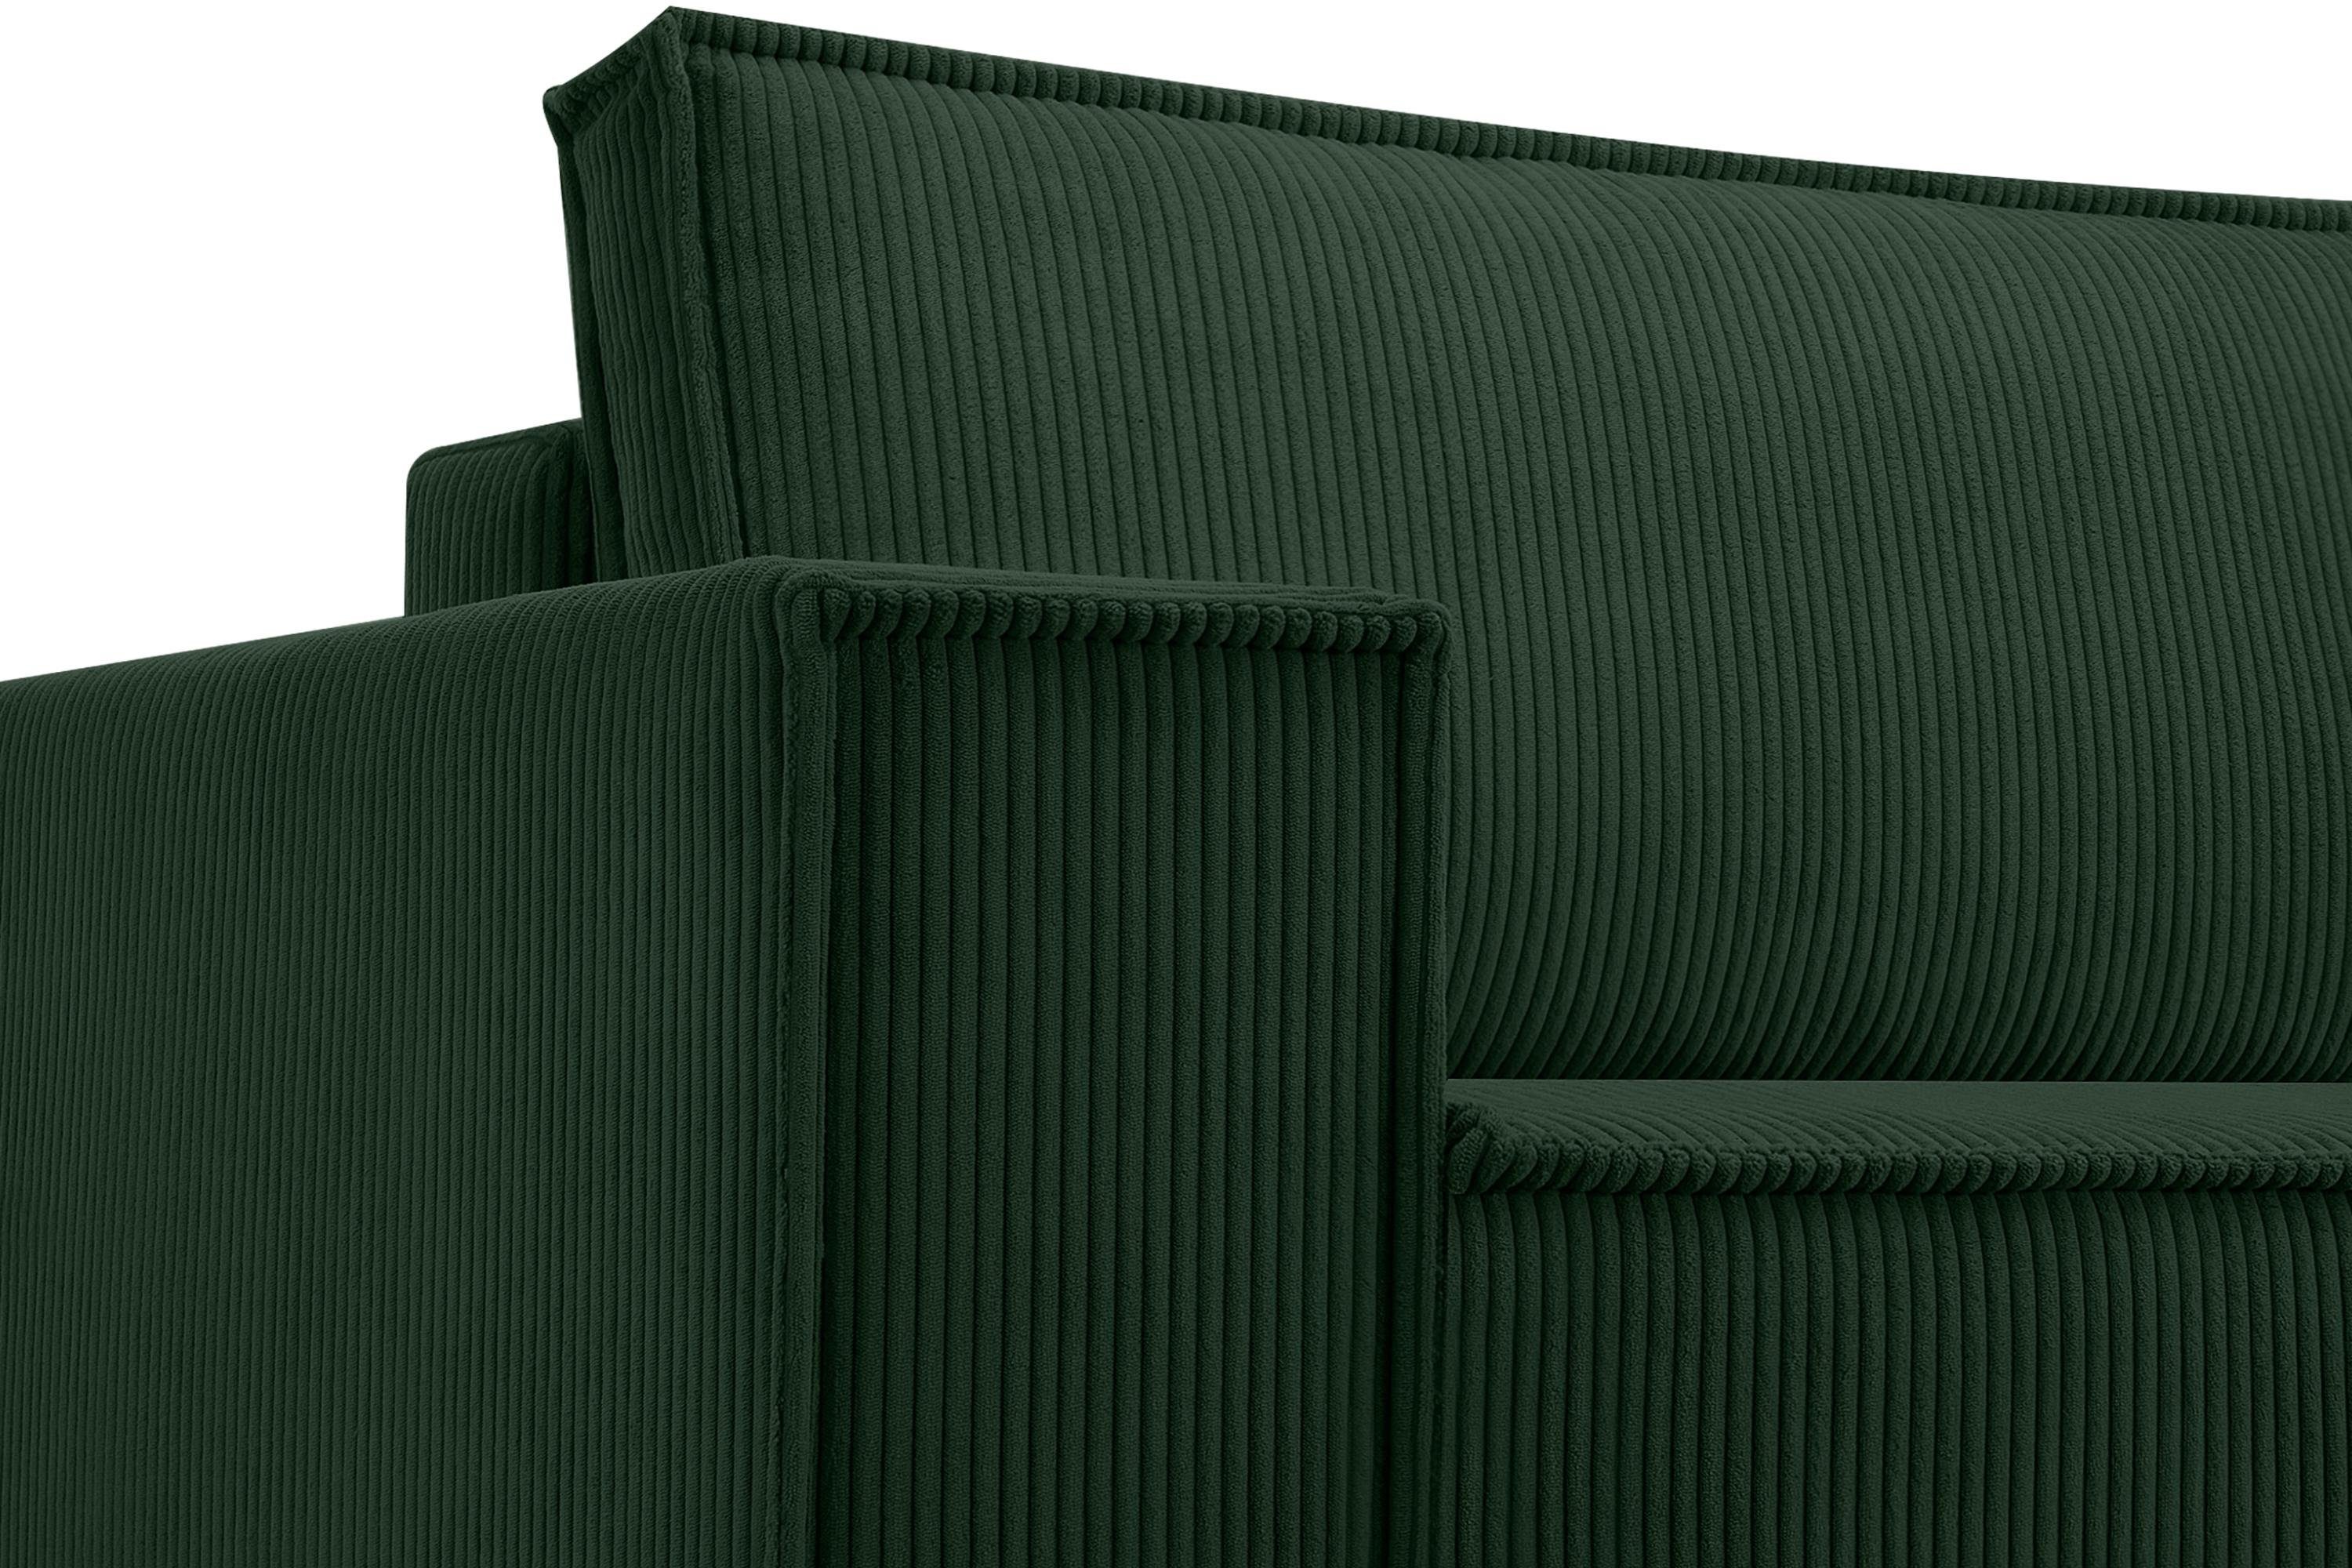 Konsimo 3-Sitzer NAPI, hergestellt Pet Cord-Stoff dunkelgrün Friendly in in EU, der Schlaffunktion, mit